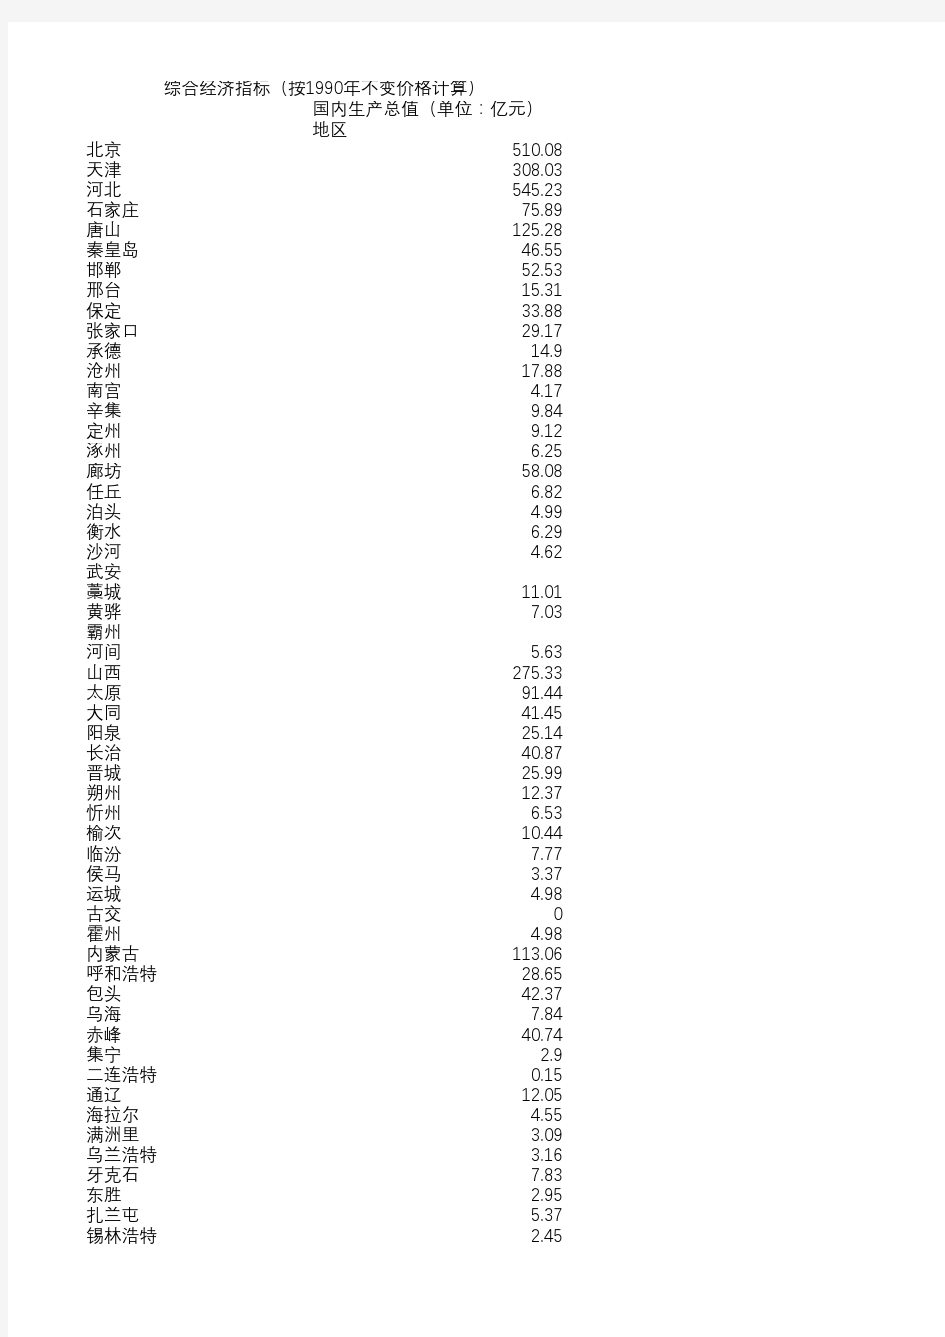 中国城市统计年鉴(1990年和1991年数据)城市国内生产总值(按1990年不变价格计算)